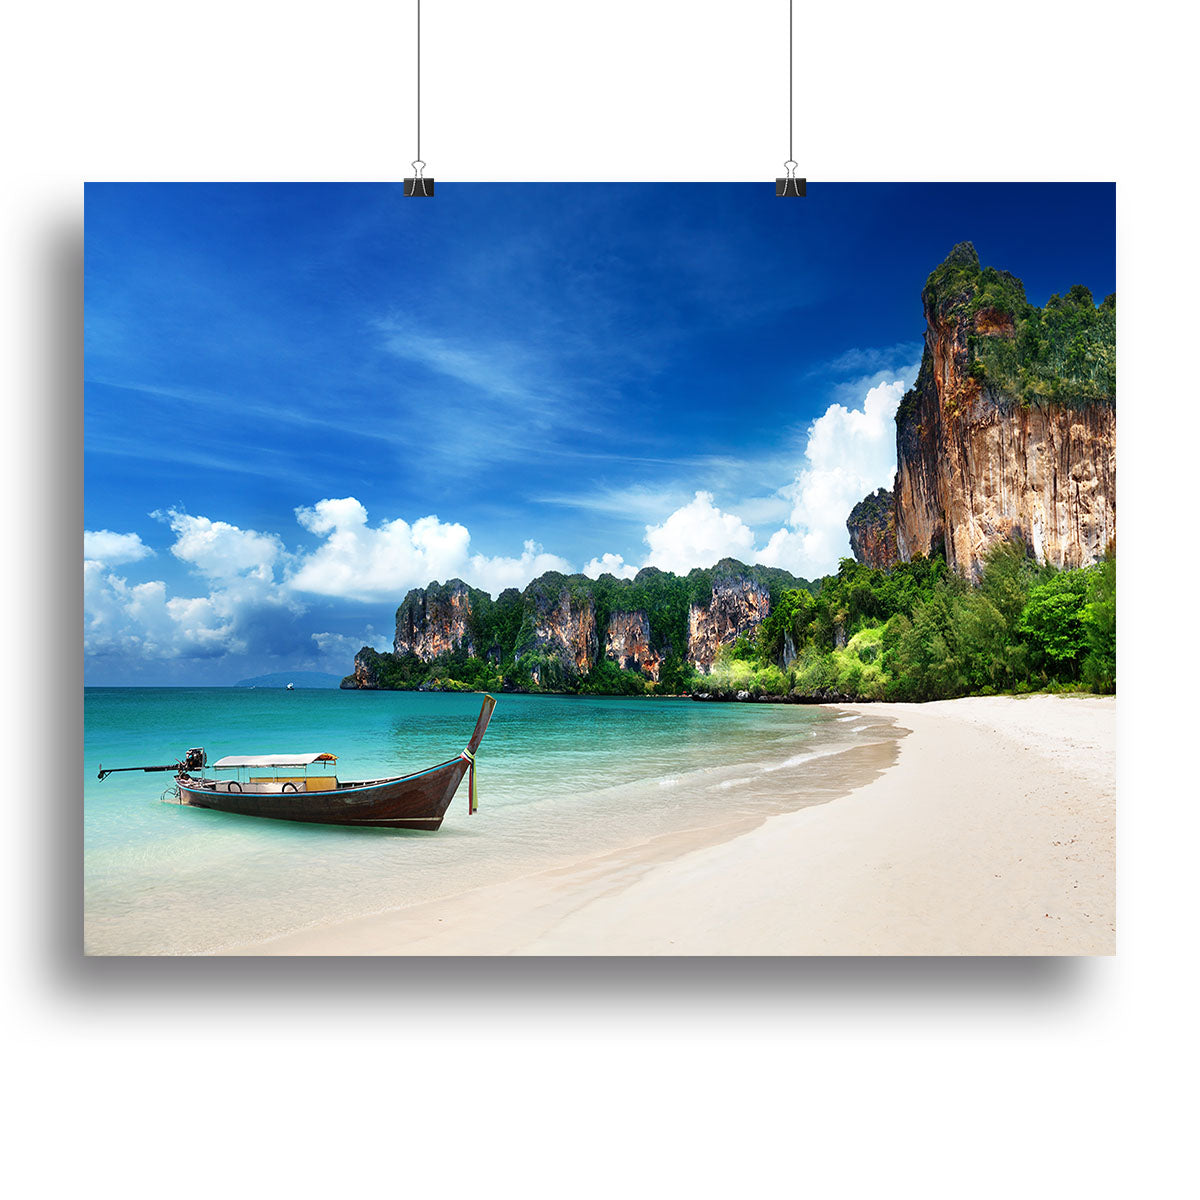 Railay beach in Krabi Thailand Canvas Print or Poster - Canvas Art Rocks - 2